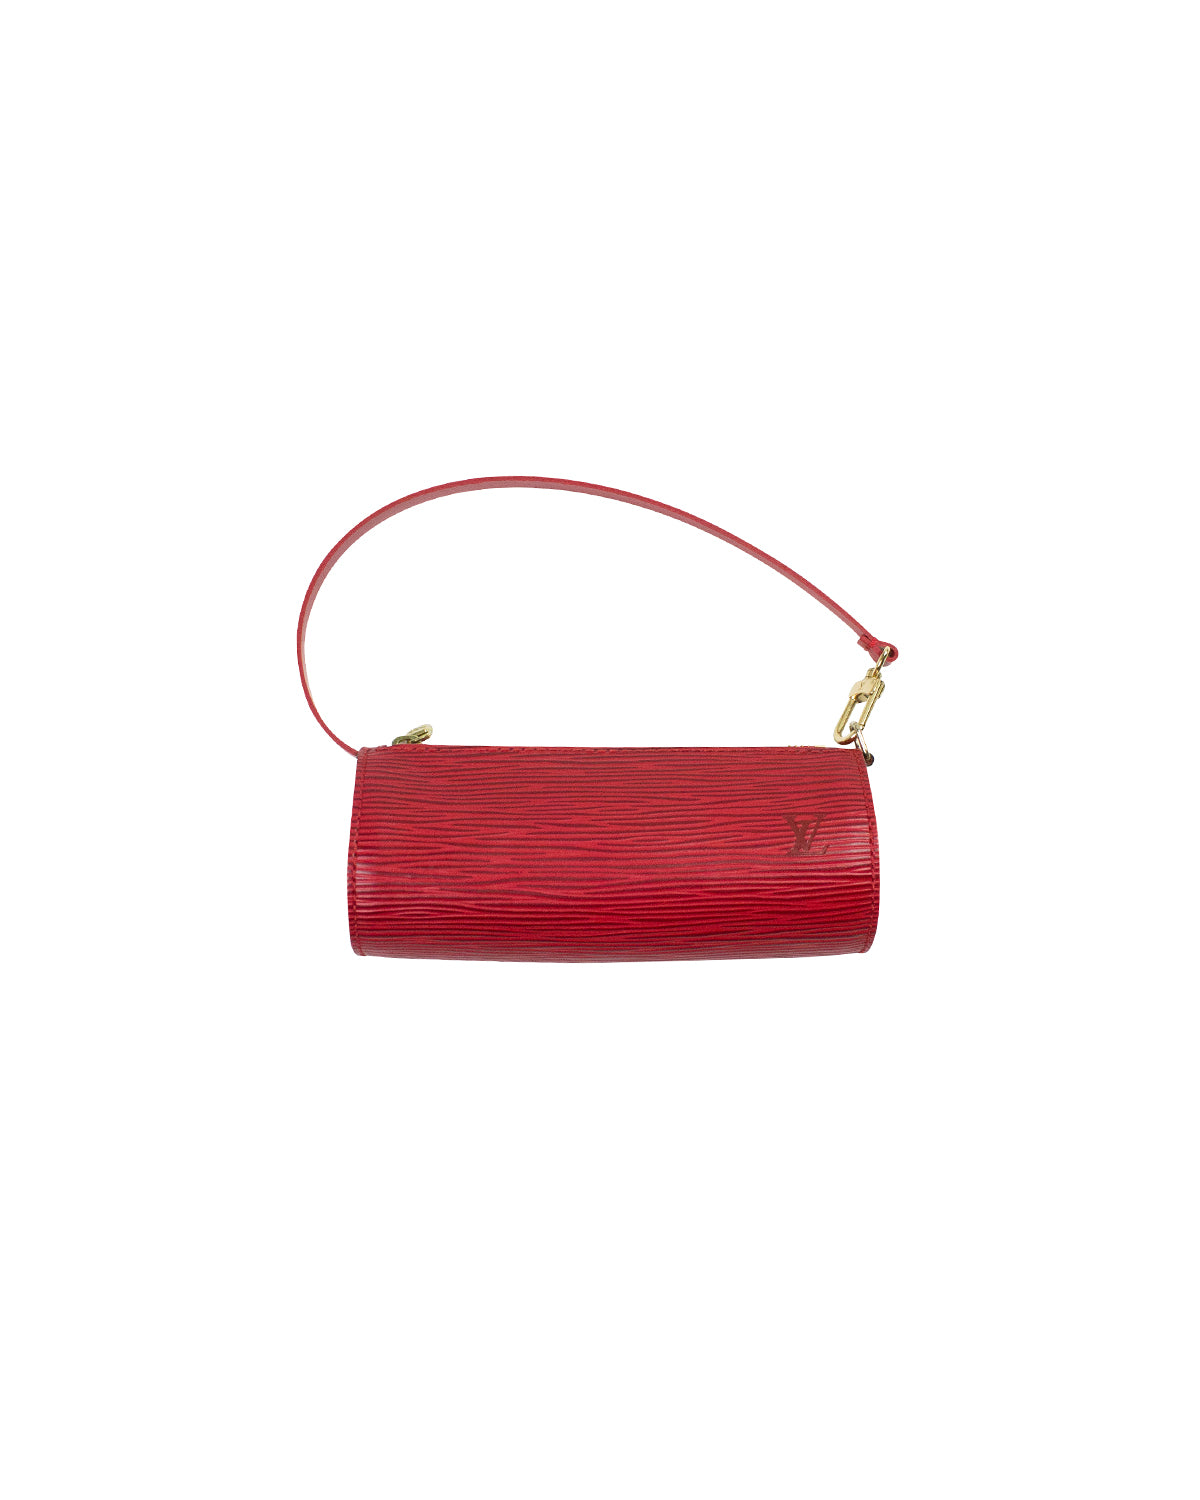 Louis Vuitton Soufflot Epi Leather Red Bag 